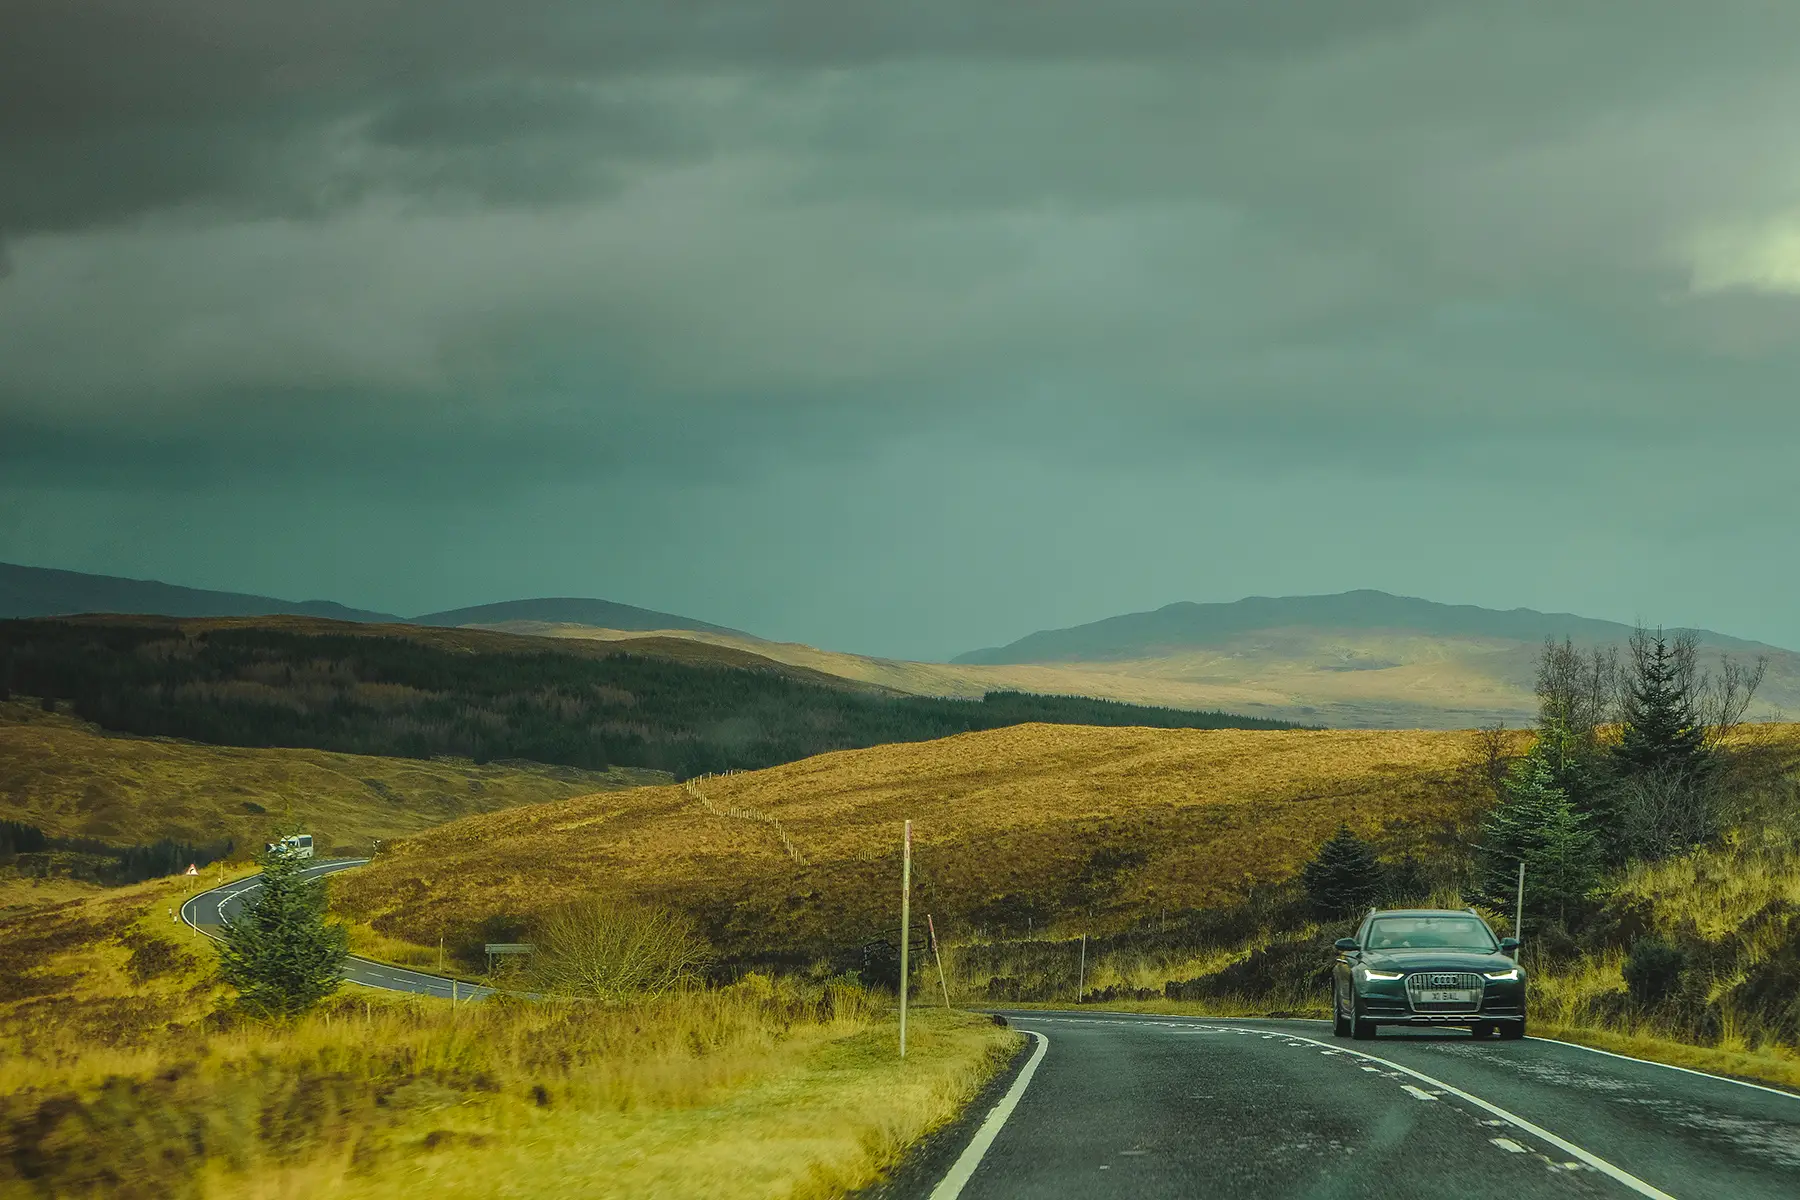 A car driving through rural Scotland